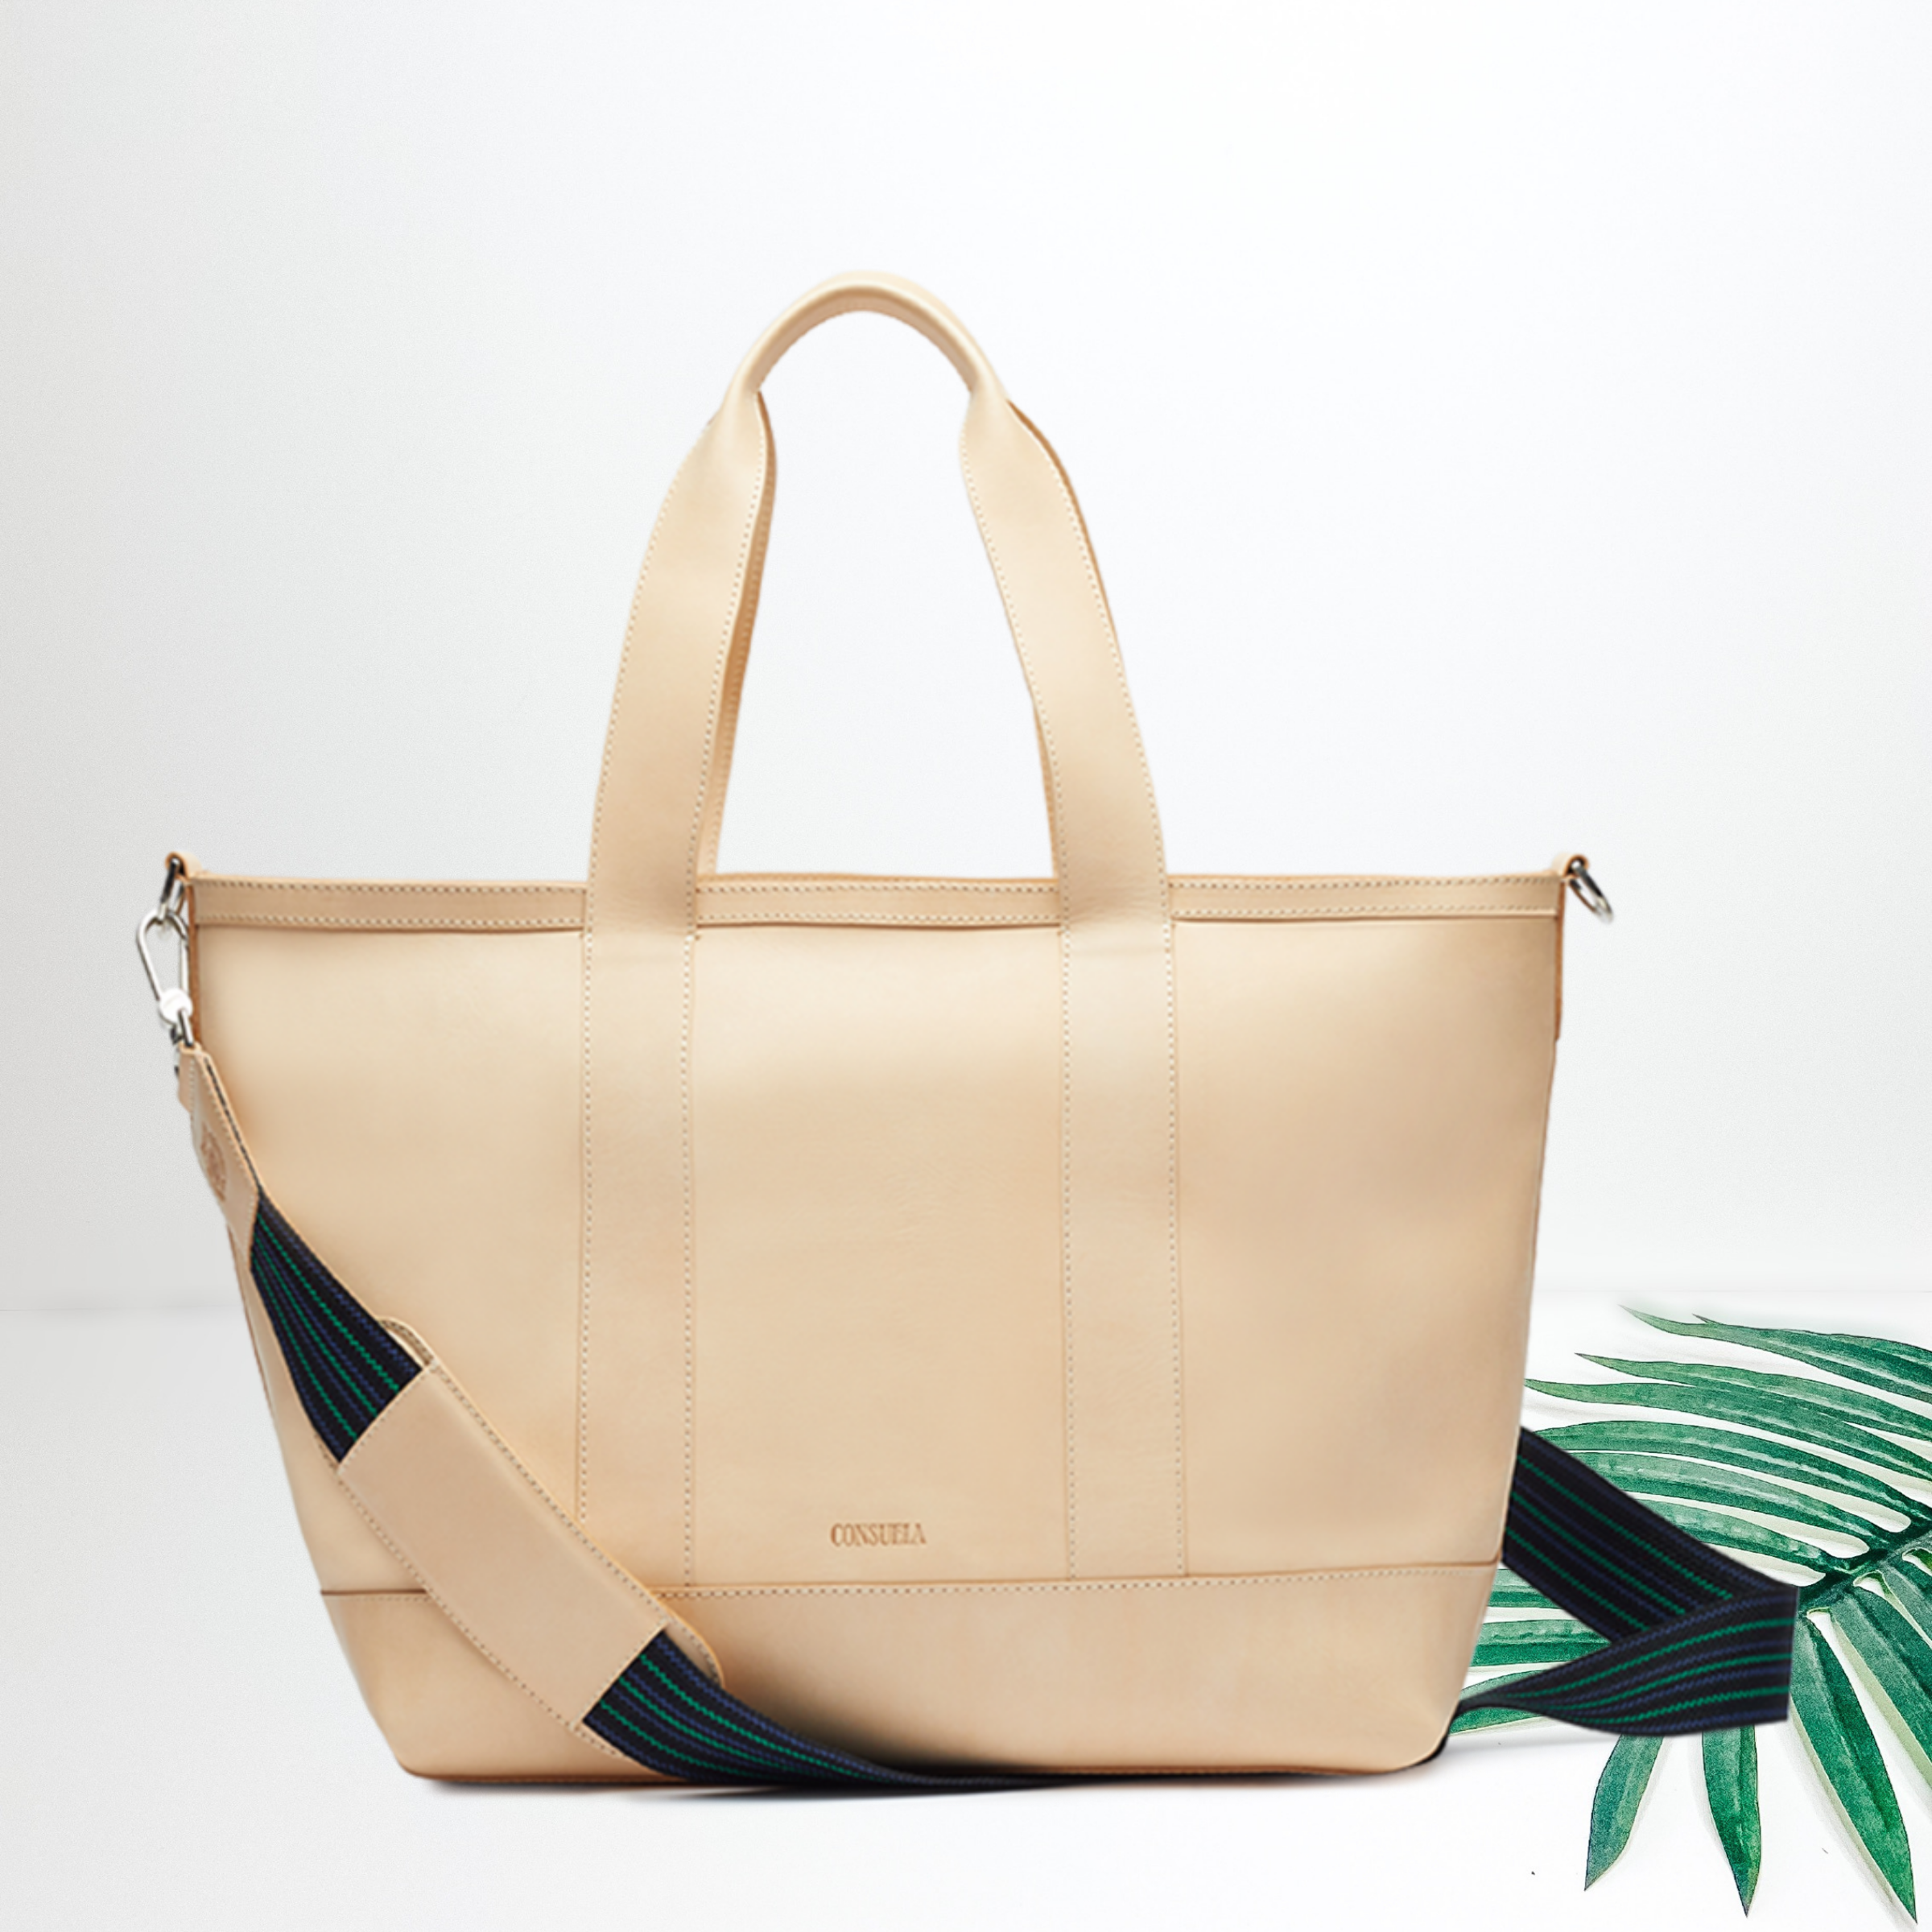 Deago Wide Purse Strap Replacement Adjustable Canvas Crossbody Handbag  Shoulder Bag Strap (Brown)